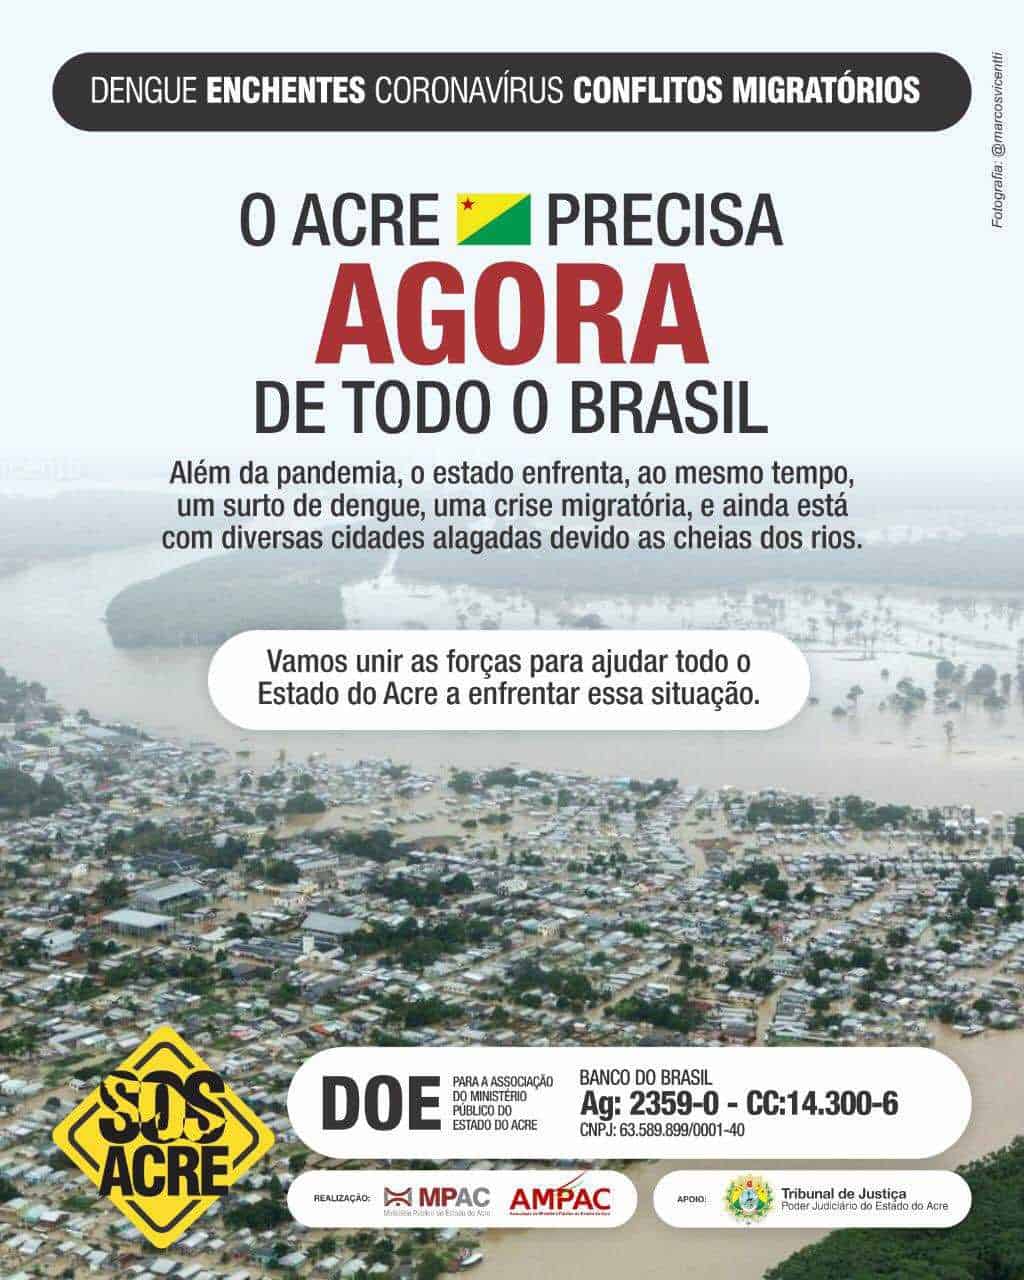 Associação do Ministério Público do Acre começou uma campanha transparente de ajuda para todo o estado (Foto: Divulgação)